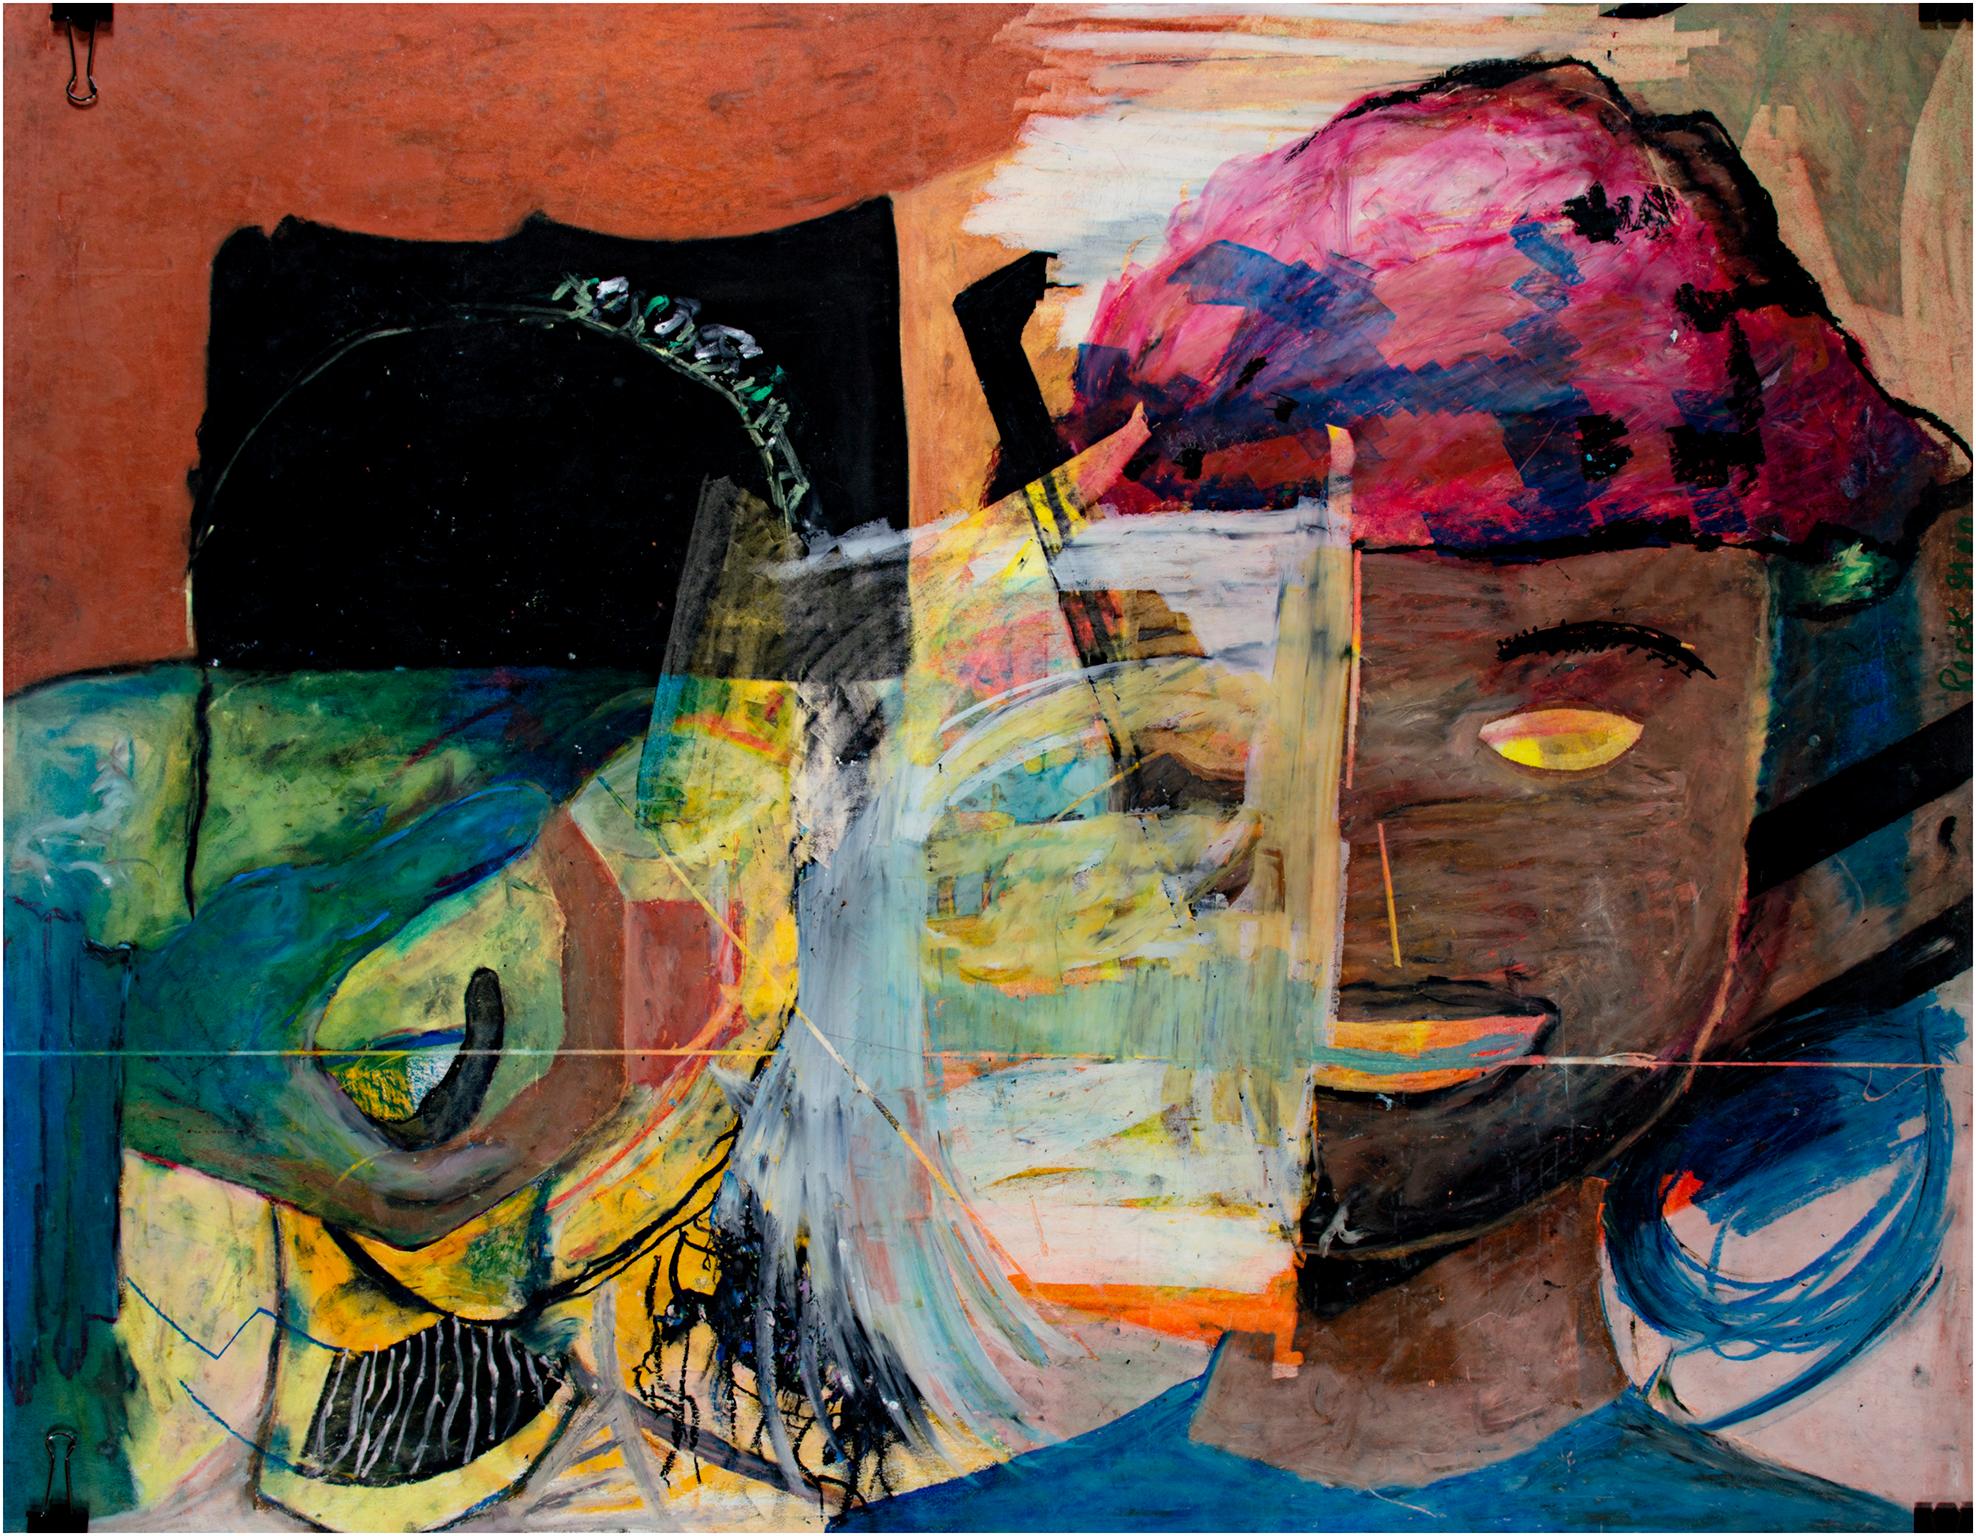 "Hand, Gesicht mit Raum" ist ein Original-Ölpastell von Reginald K. Gee. Der Künstler hat das Werk am rechten Rand und auf der Rückseite signiert. Es zeigt ein abstrahiertes Gesicht und eine Hand sowie eine Vielzahl von expressionistischen,